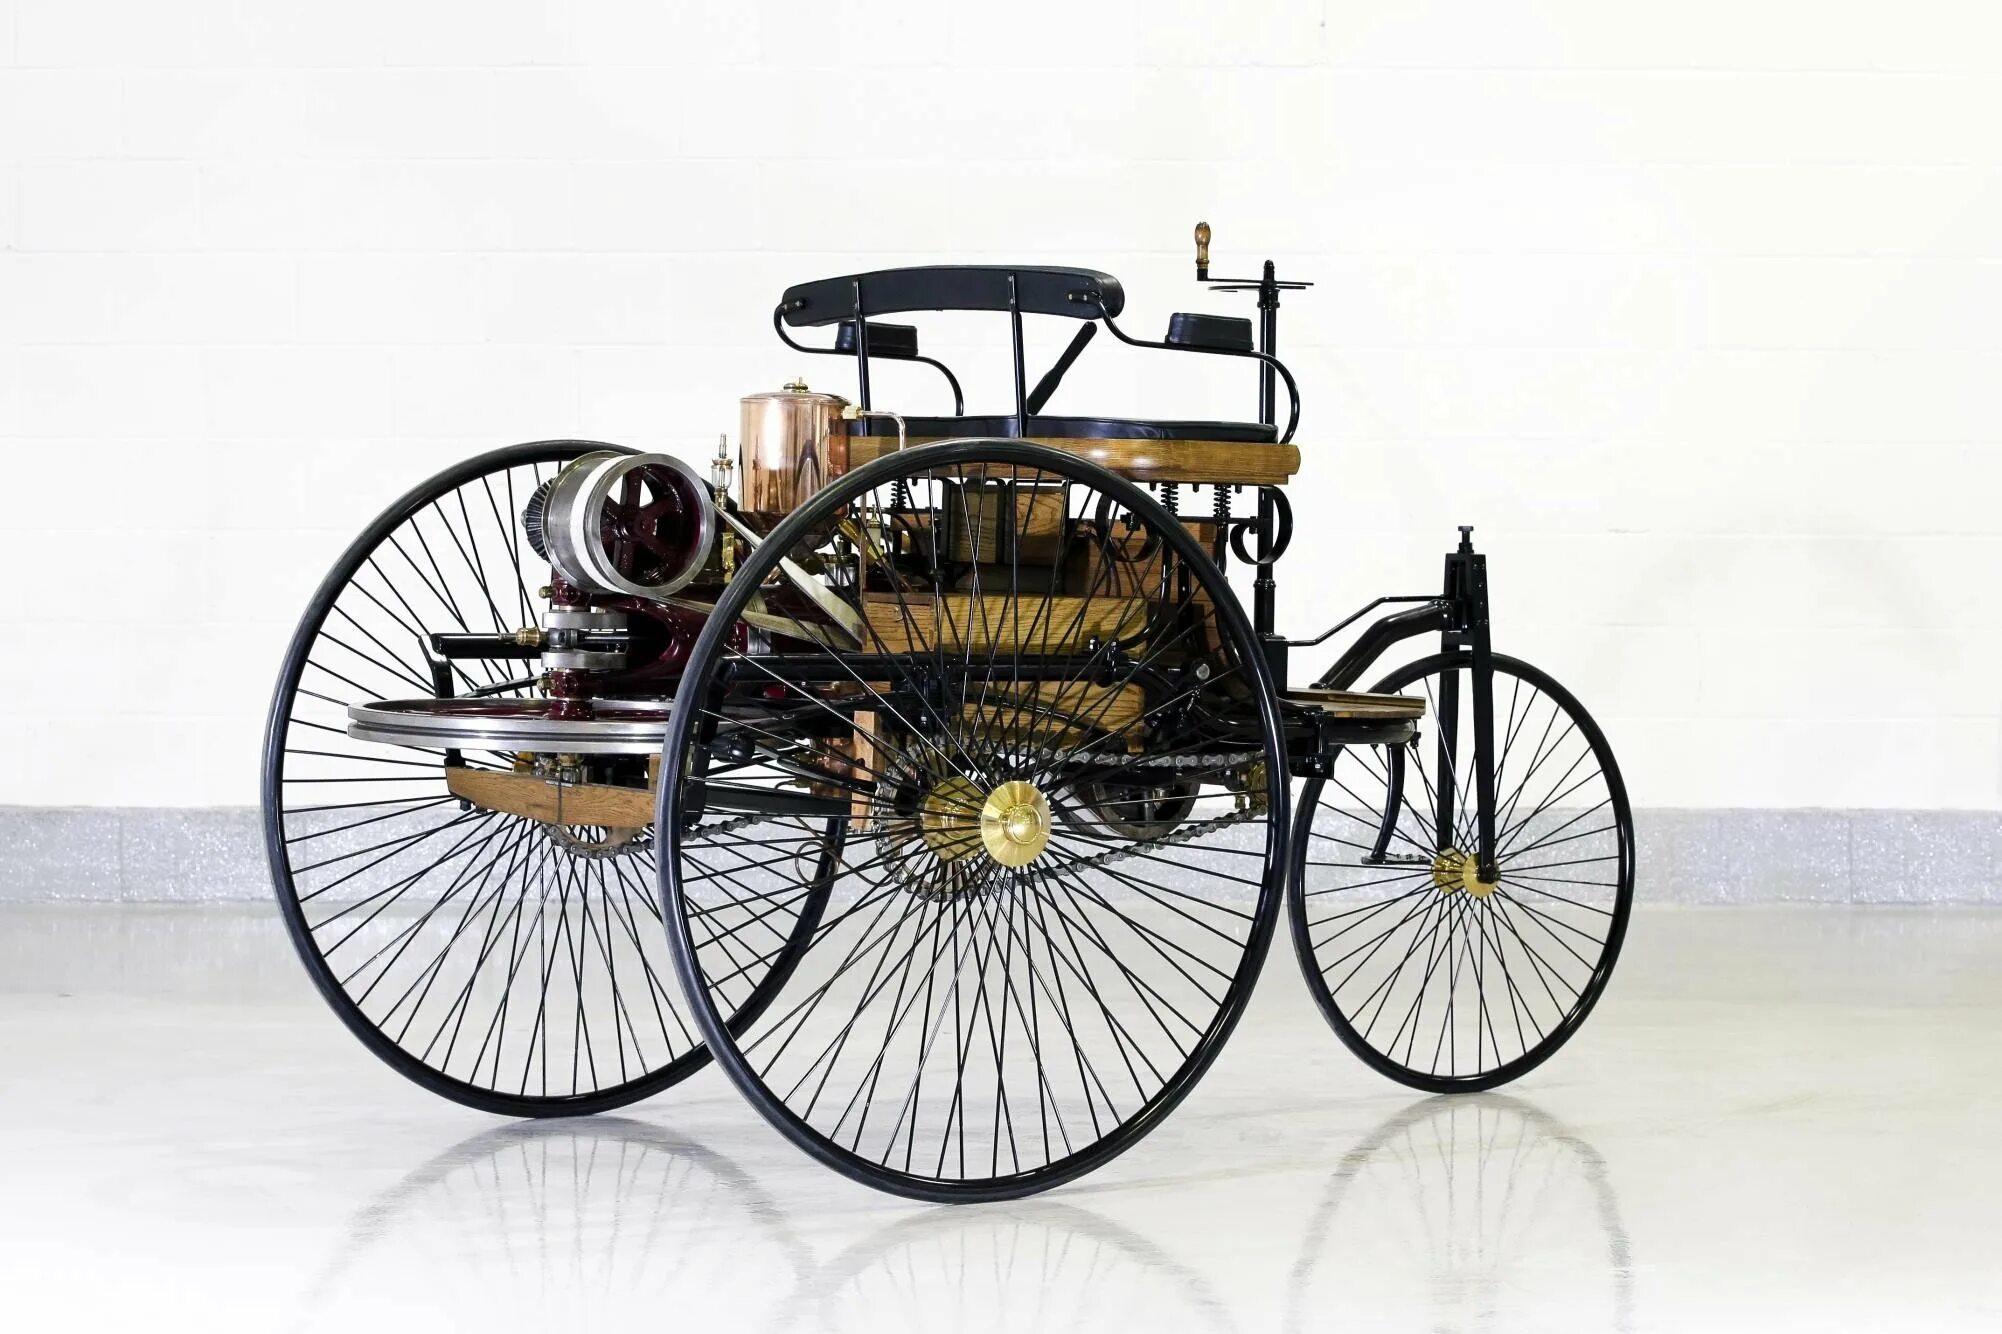 Первый автомобиль количество. Benz Patent-Motorwagen 1886. Benz Patent-Motorwagen 1886 двигатель.